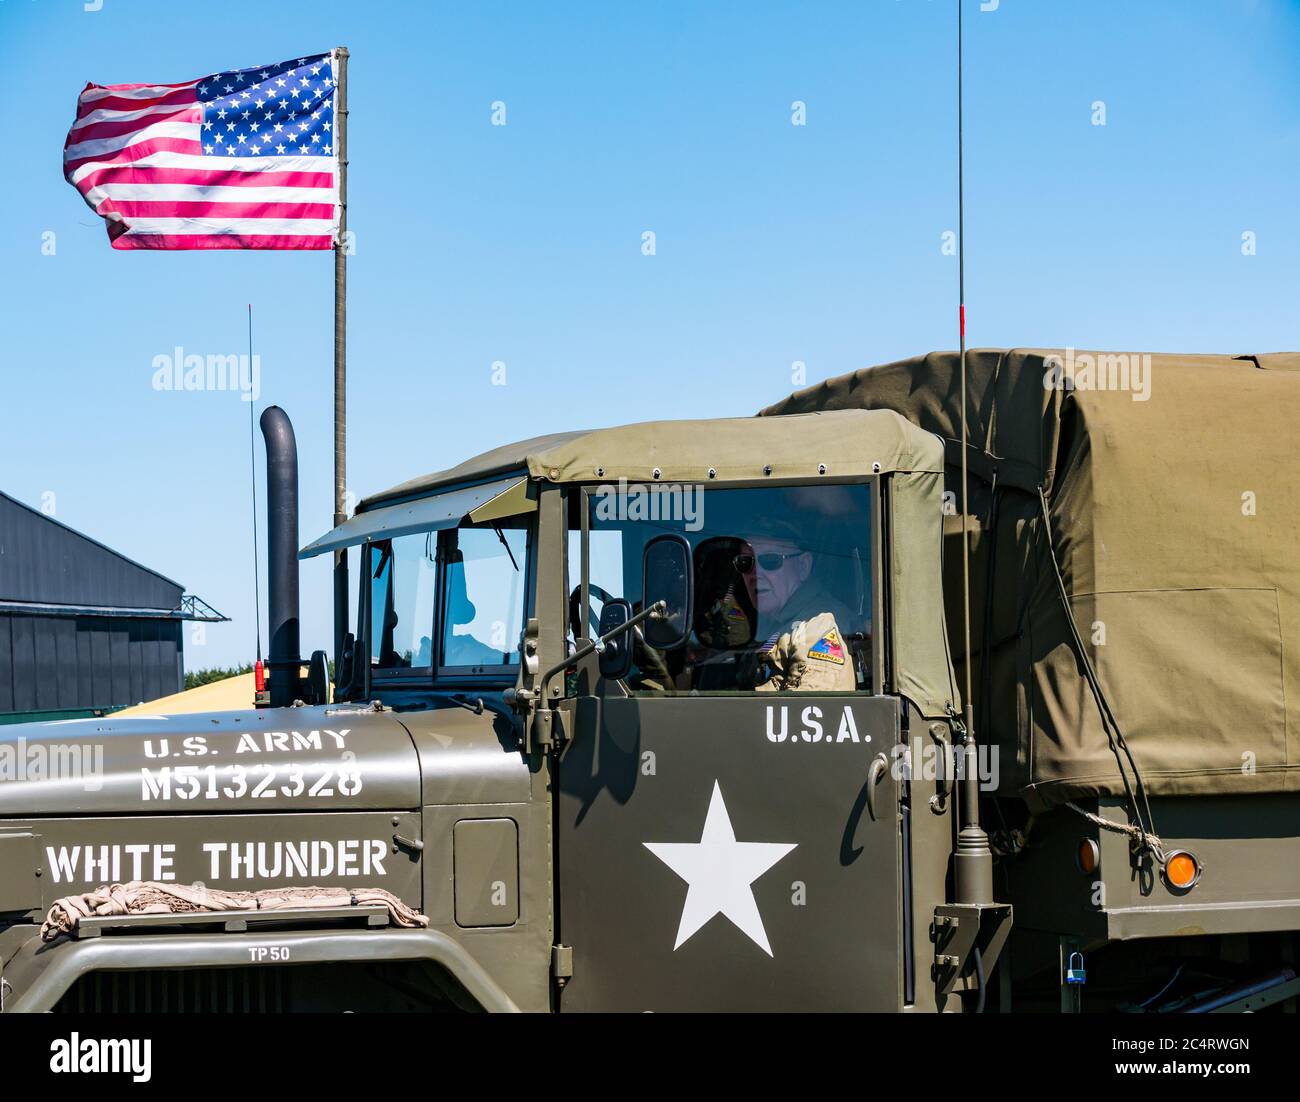 Mann in Militäruniform in US-Armee Fahrzeug mit amerikanischen Stars & Stripes Flagge, Kriegserfahrung Ereignis, East Fortune, East Lothian, Schottland, Großbritannien Stockfoto